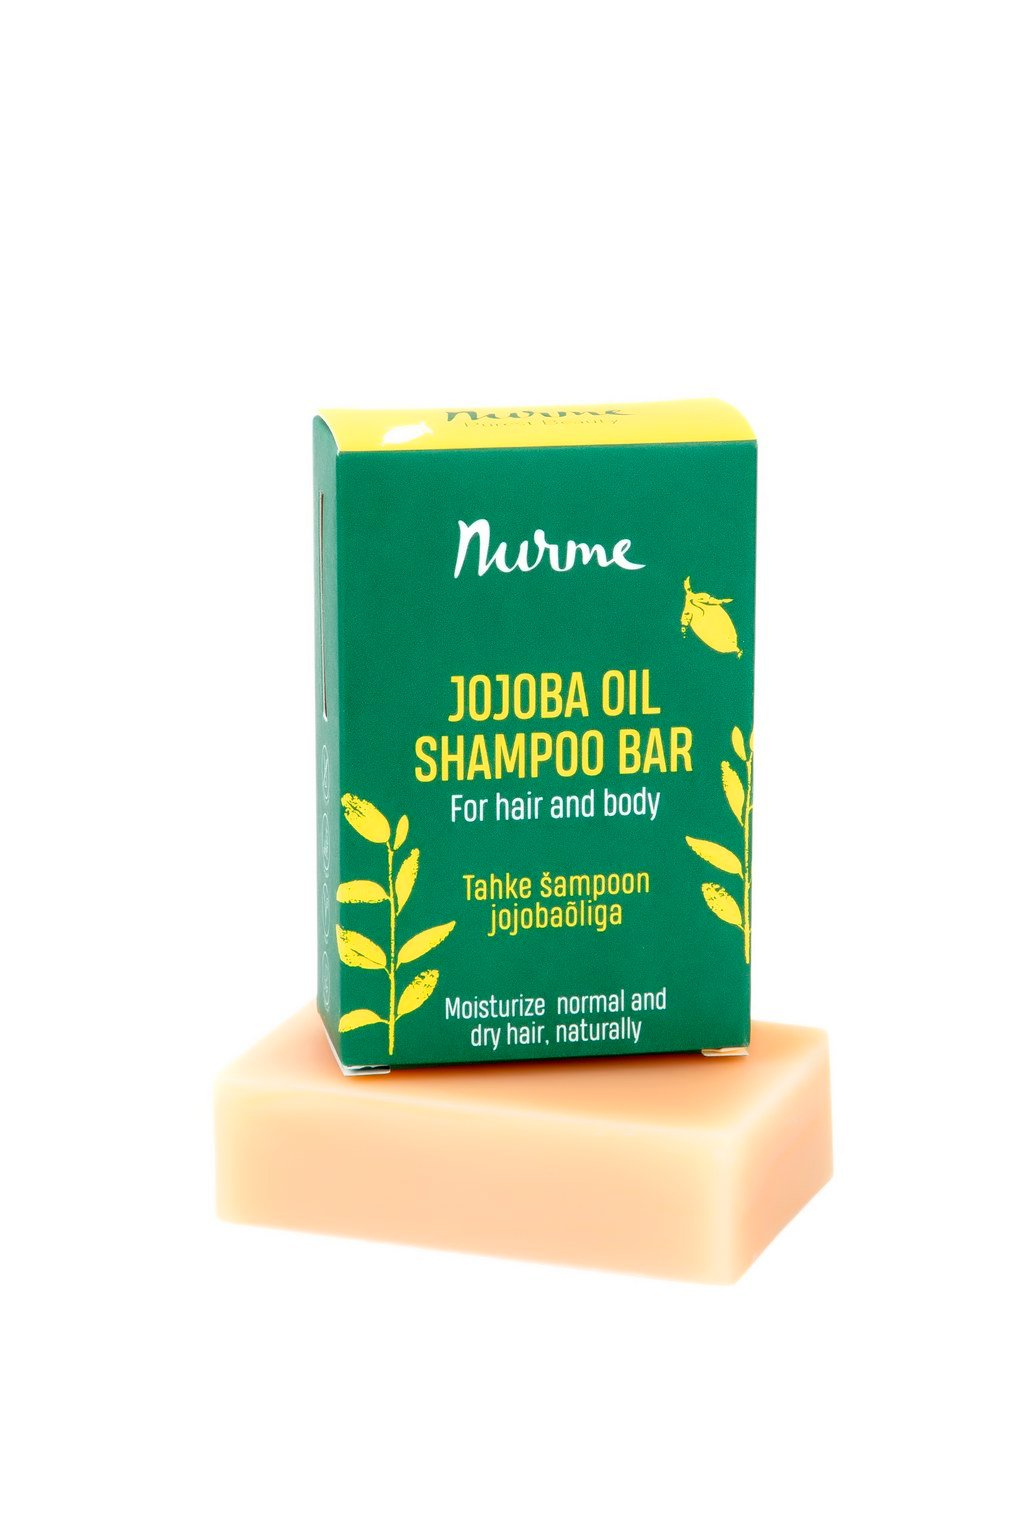 Nurme Jojoba Oil Shampoo Bar 100g